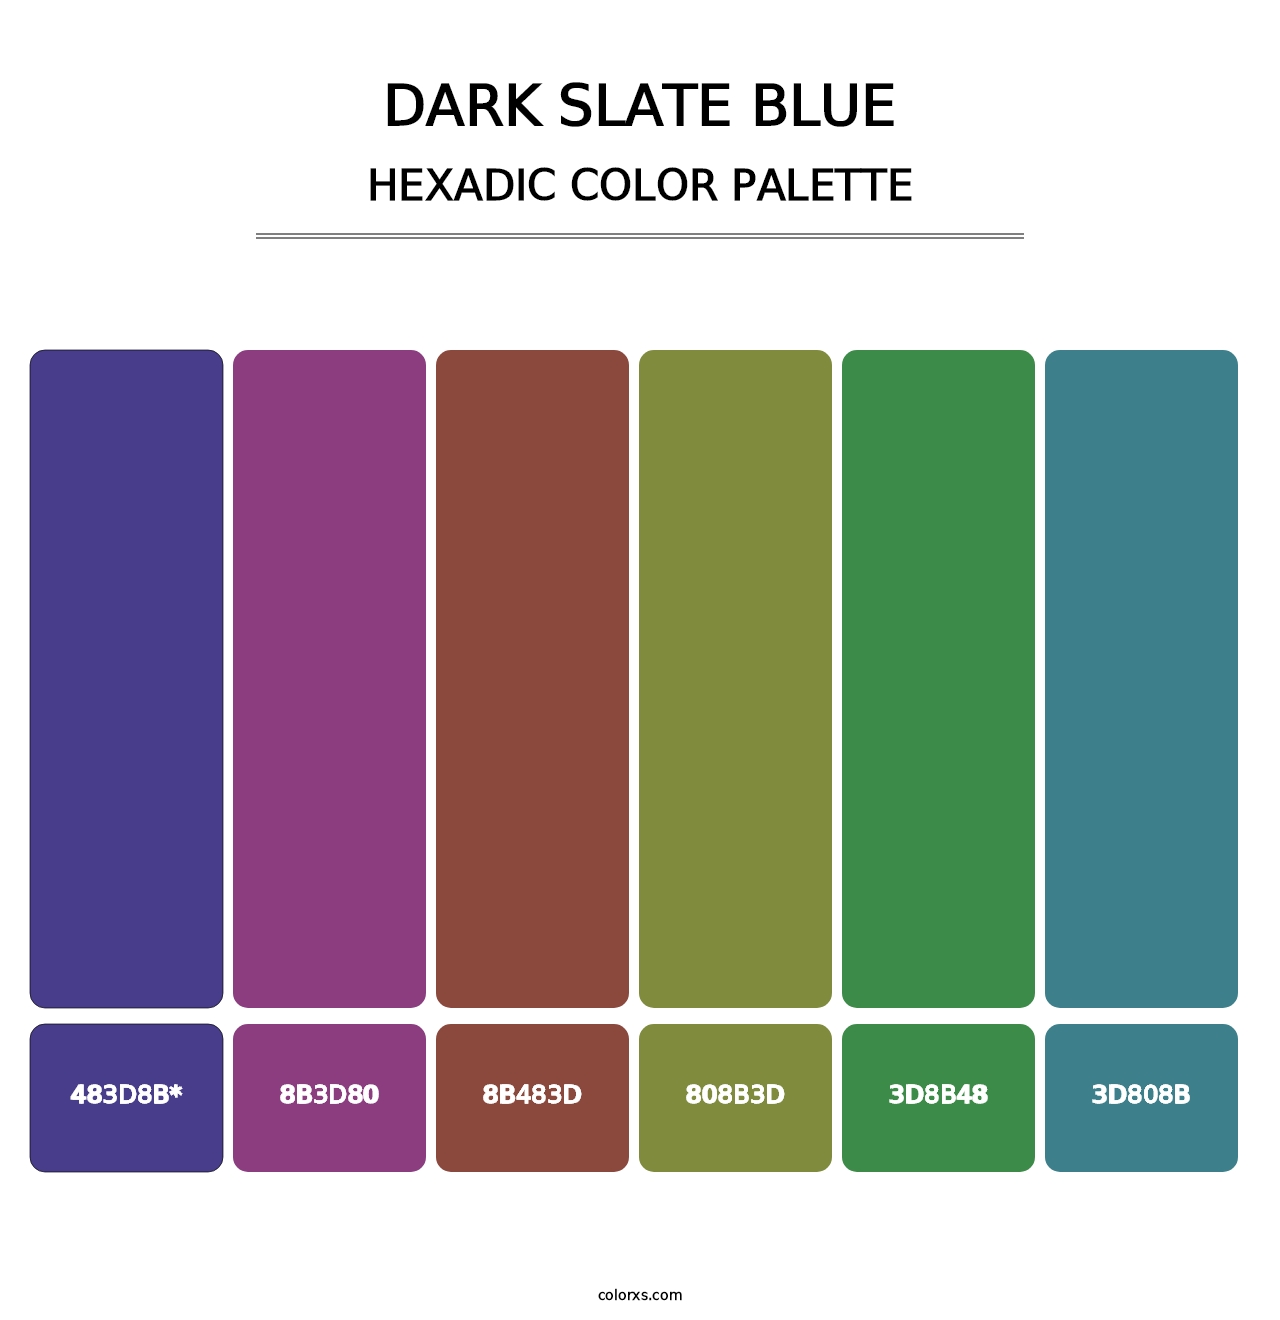 Dark Slate Blue - Hexadic Color Palette